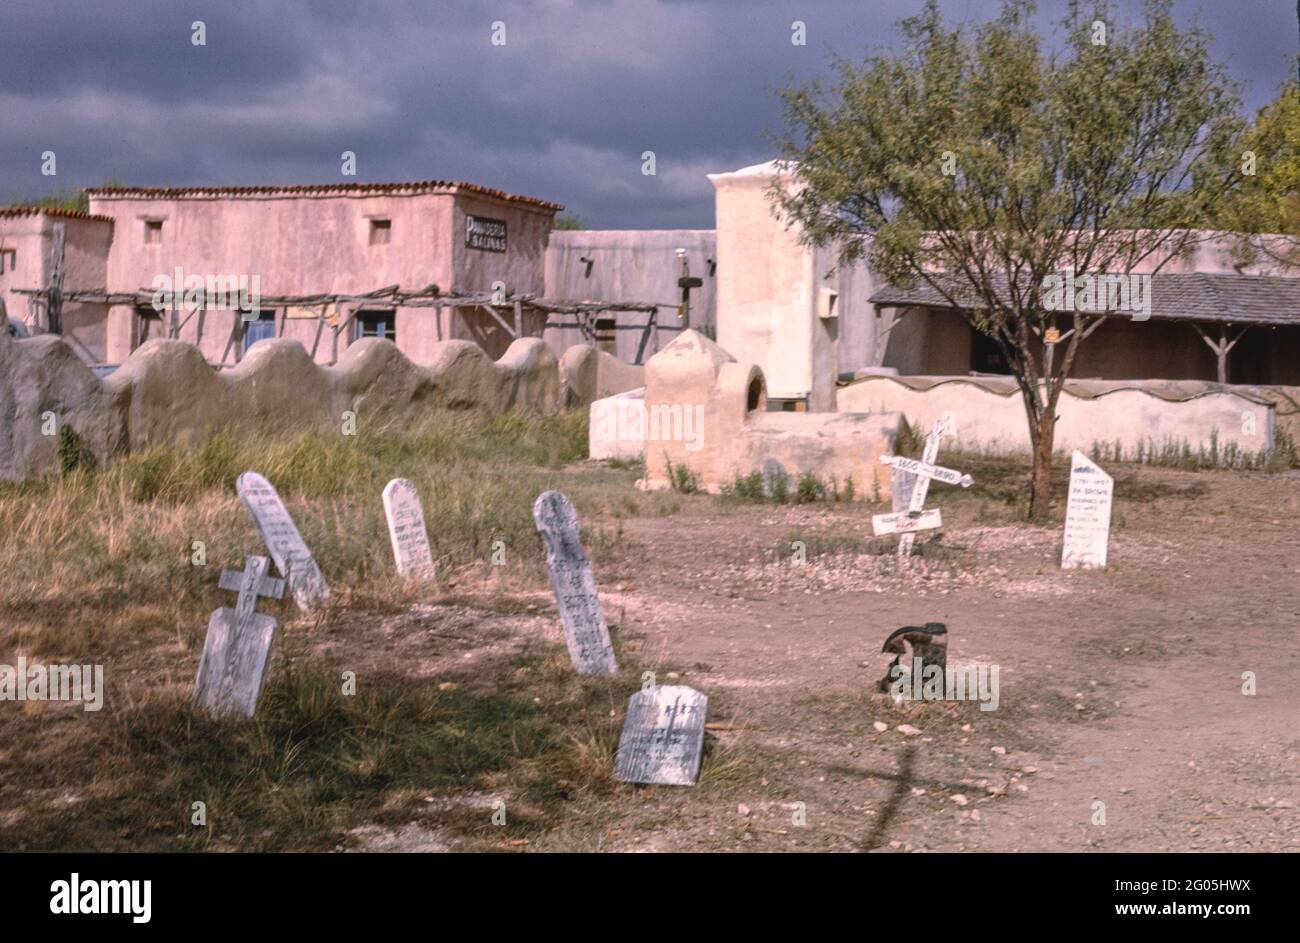 Amérique des années 1990 - cimetière d'Alamo Village, Brackettville, Texas 1993 Banque D'Images